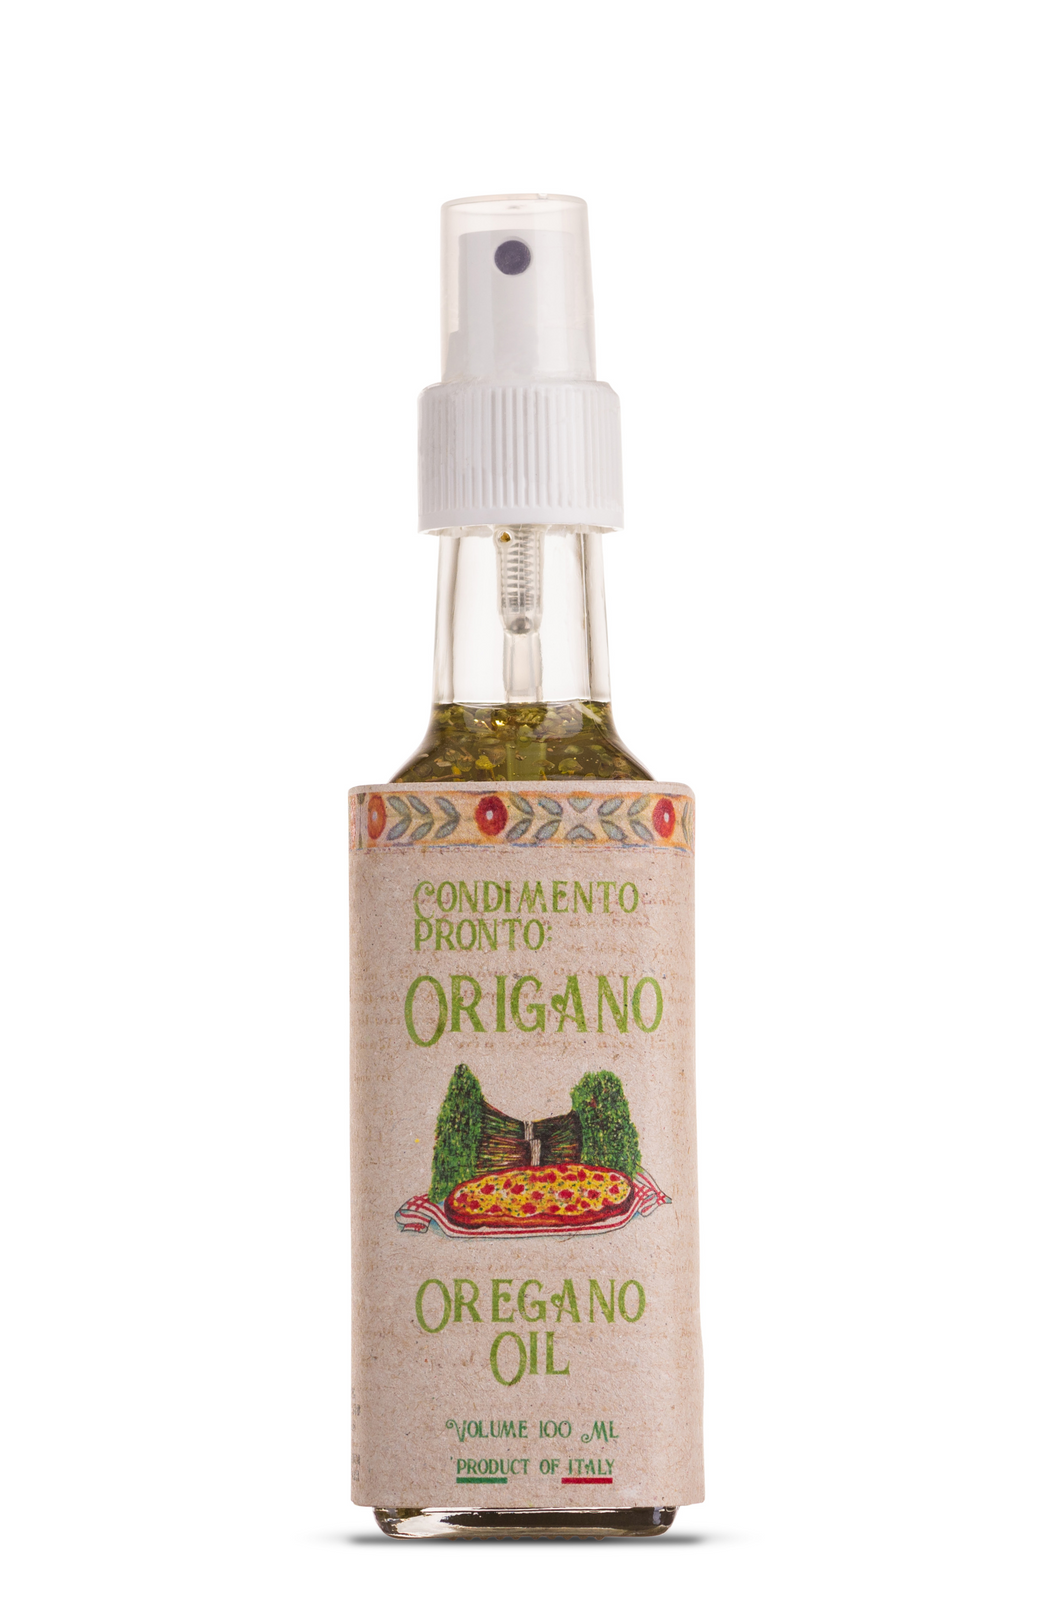 Casarecci di Calabria Olive Oil Based Oregano Condiment - 3.4 oz